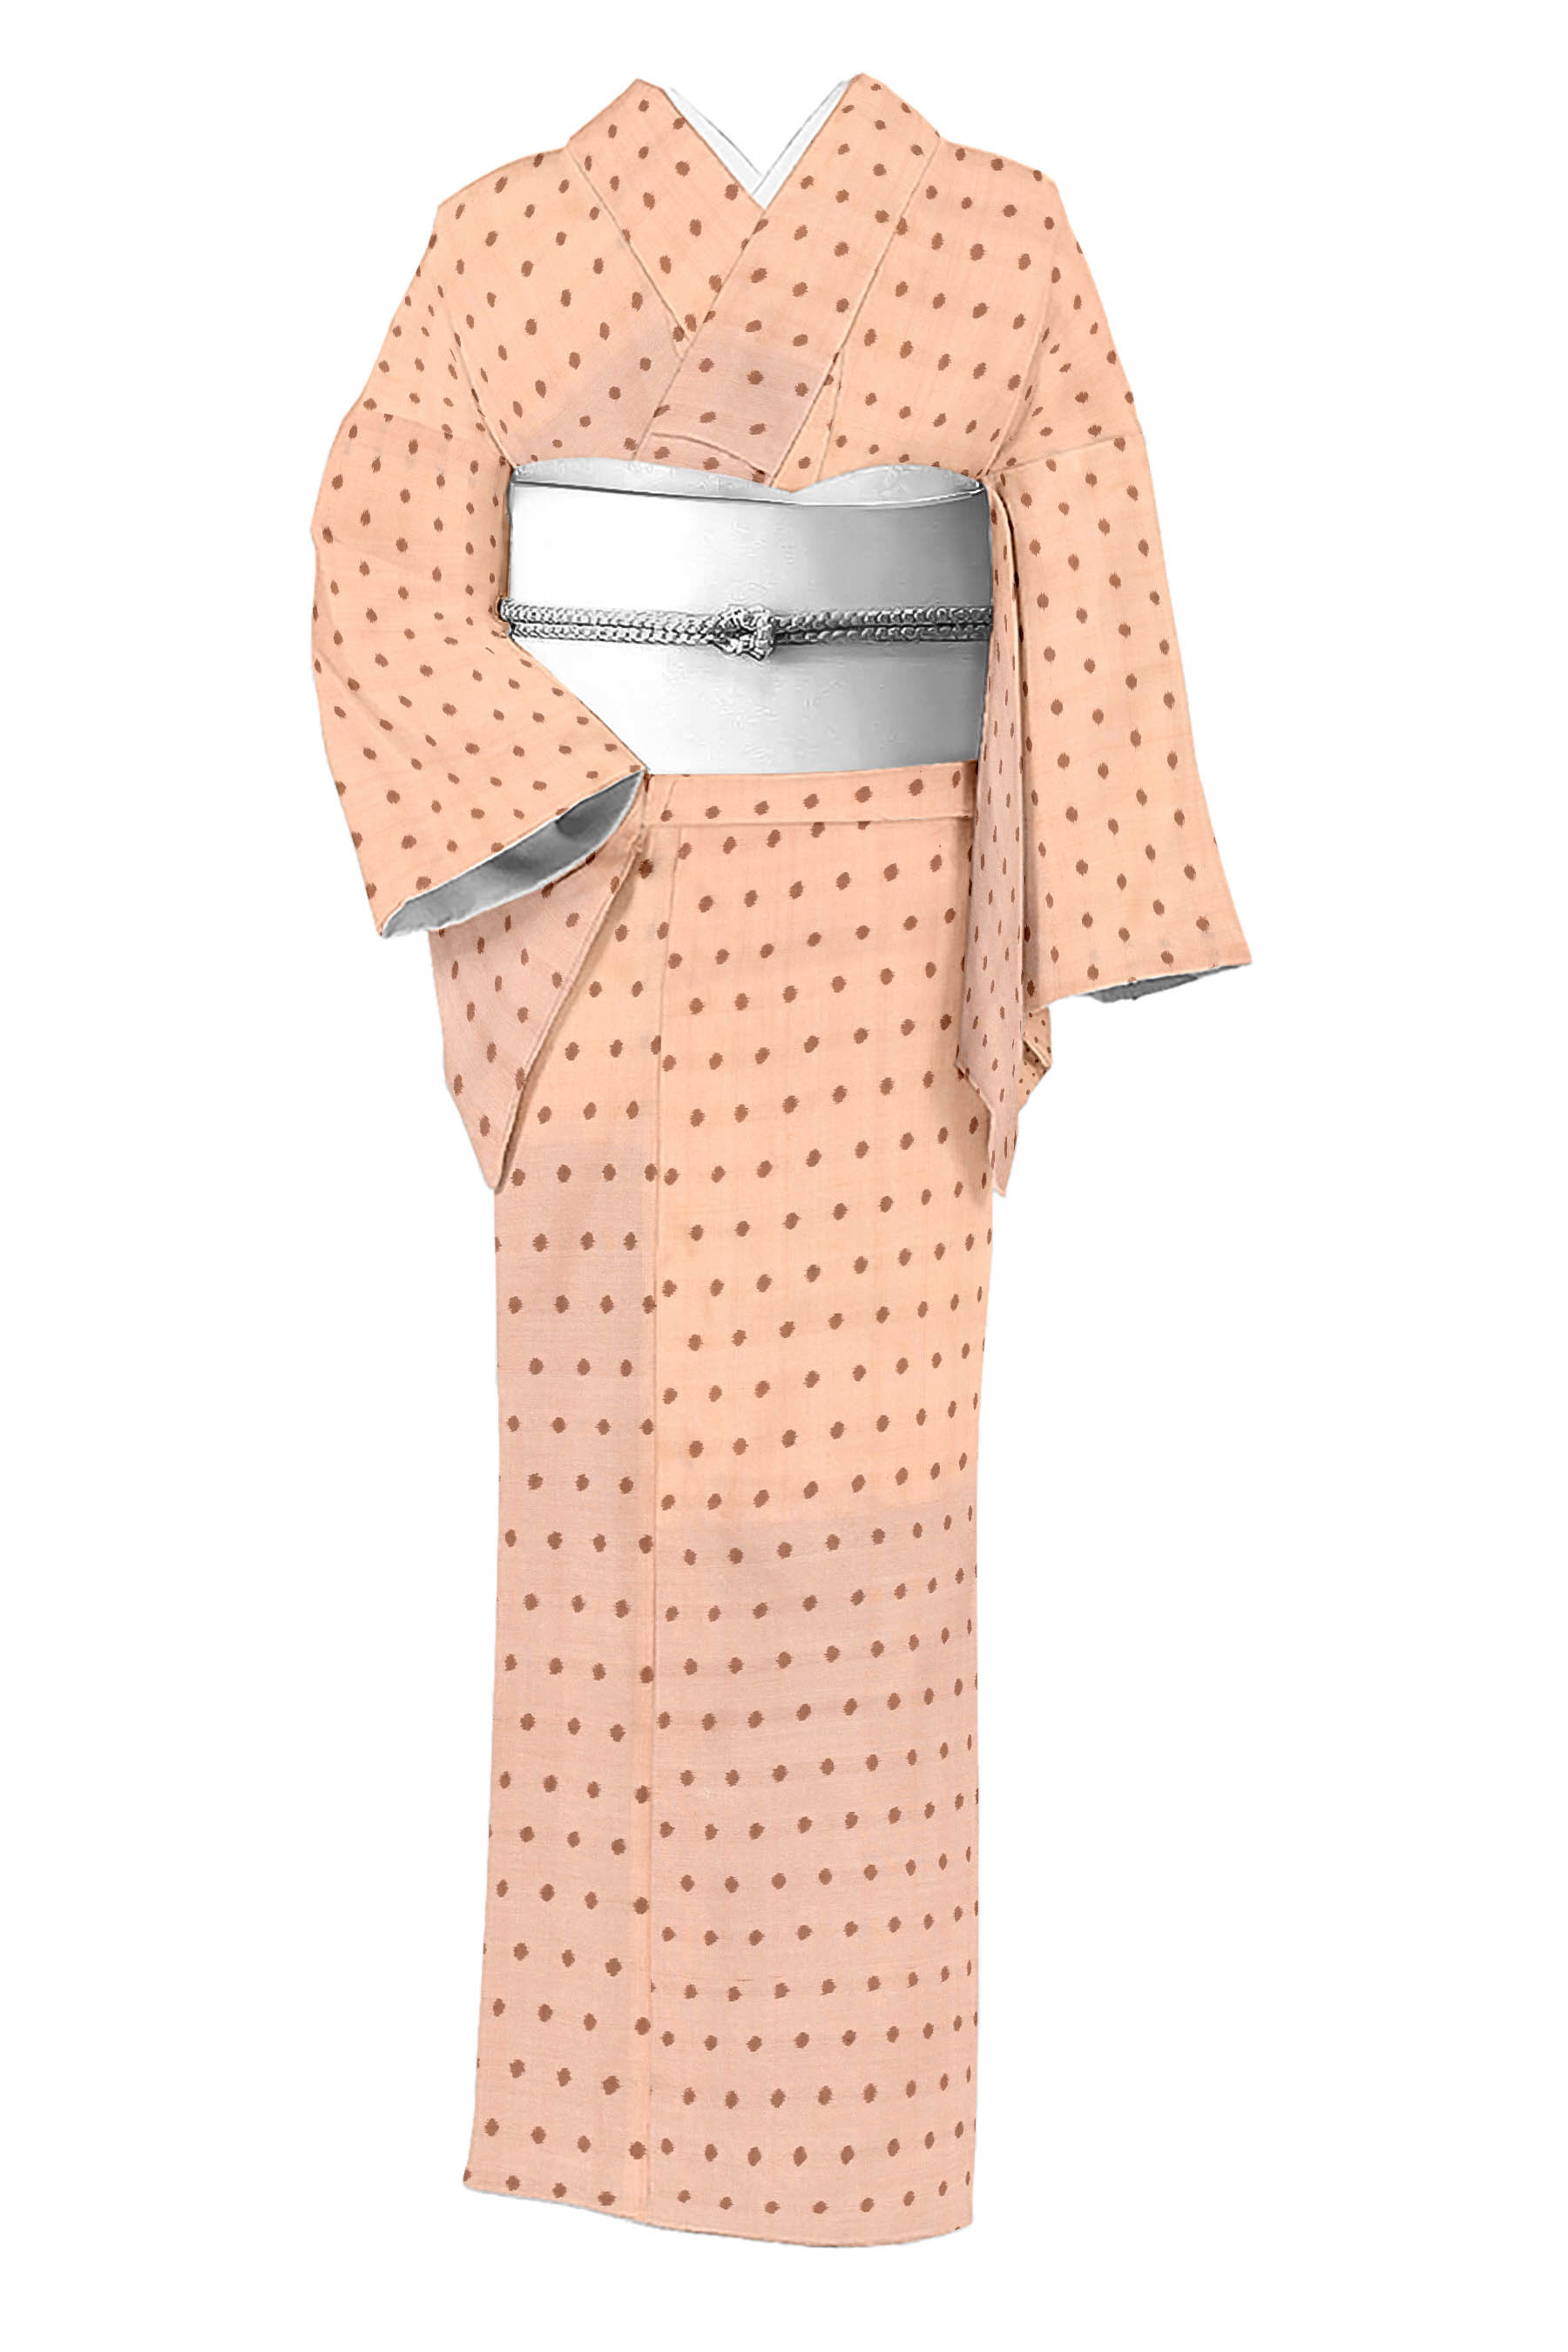 十字絣 紬 シンプル 正絹 X026 - 着物・浴衣